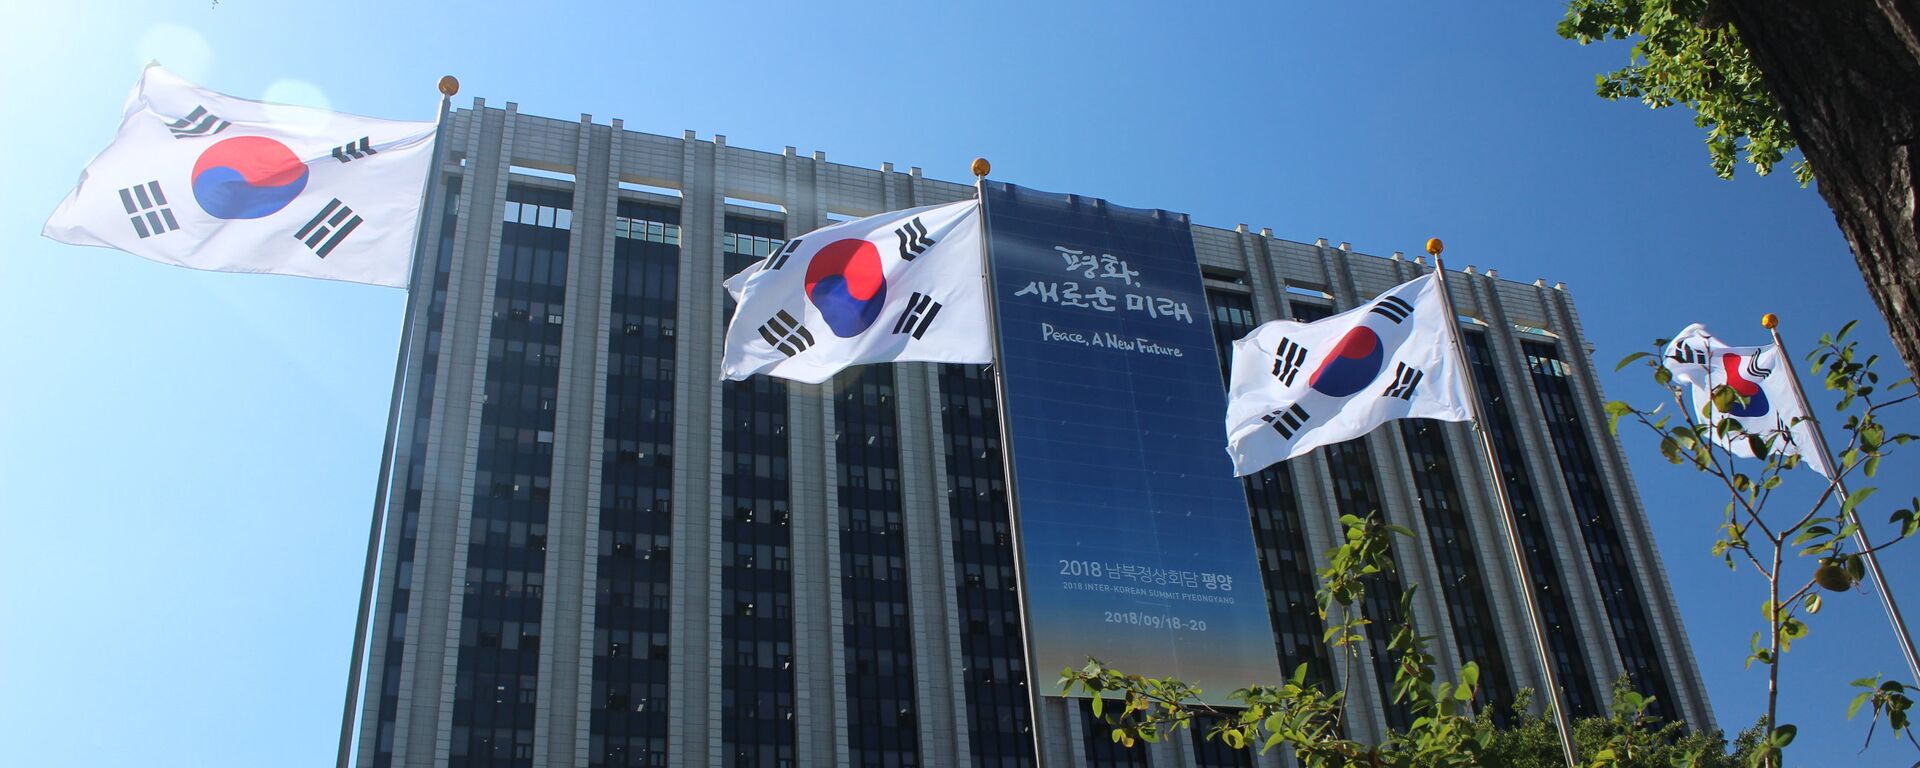 Khu phức hợp chính phủ ở Seoul, nơi treo biểu ngữ với khẩu hiệu chính của hội nghị thượng đỉnh sắp tới Hoà bình, một tương lai mới. - Sputnik Việt Nam, 1920, 10.04.2022